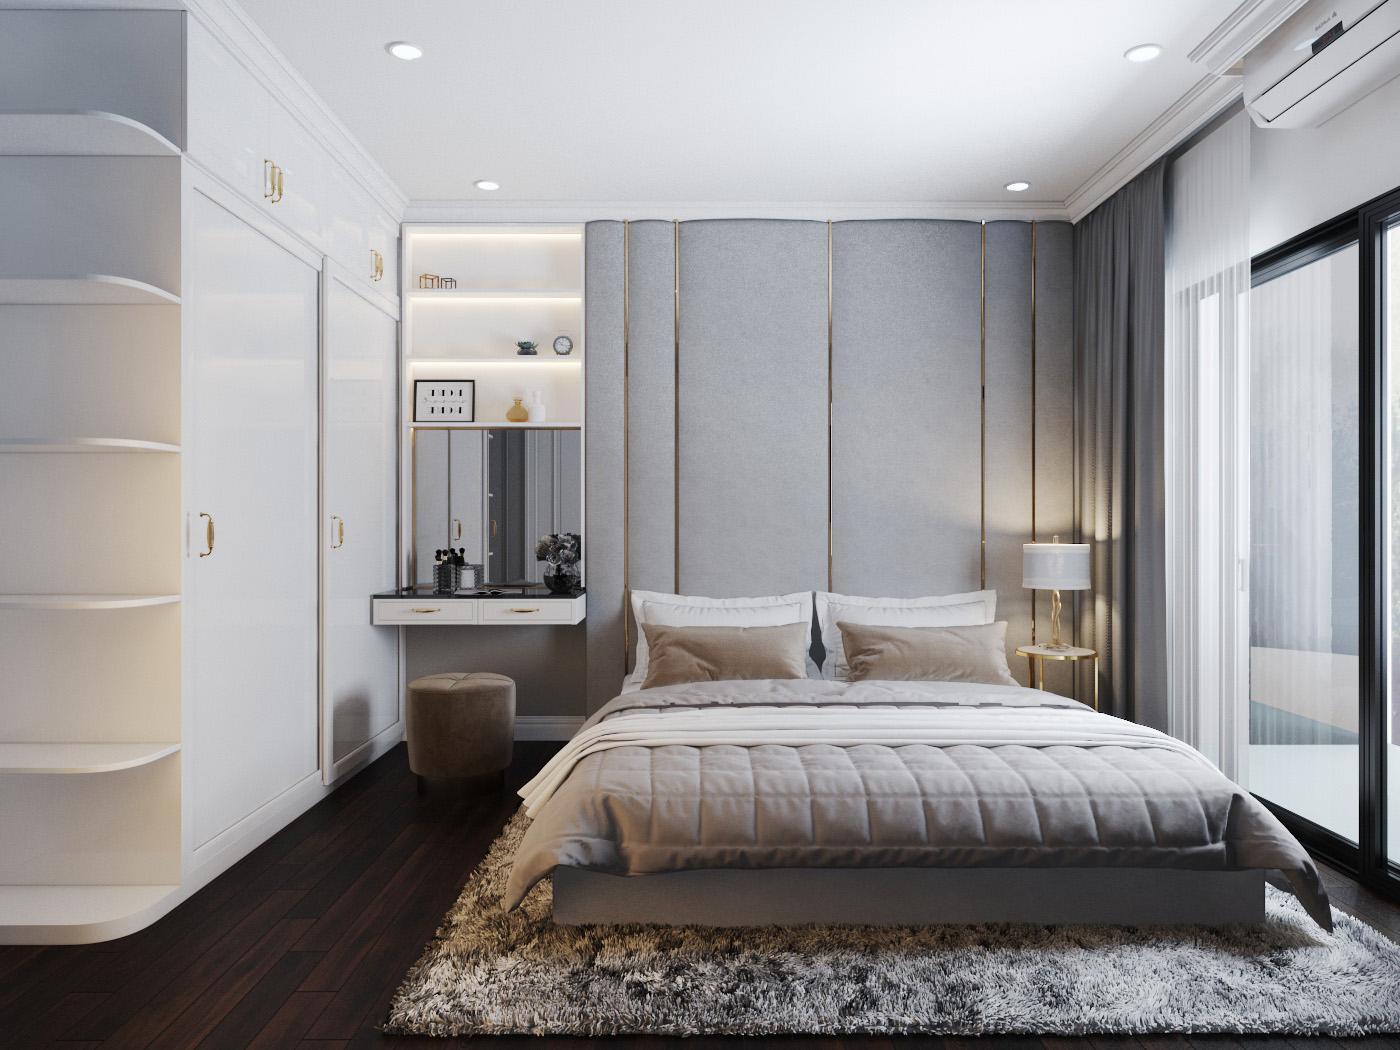 Với diện tích rộng rãi, kiến trúc sư thiết kế tủ quần áo màu trắng kịch trần tựa như một bức tường. Căn phòng sử dụng nội thất cao cấp, tông màu trung tính thanh lịch.